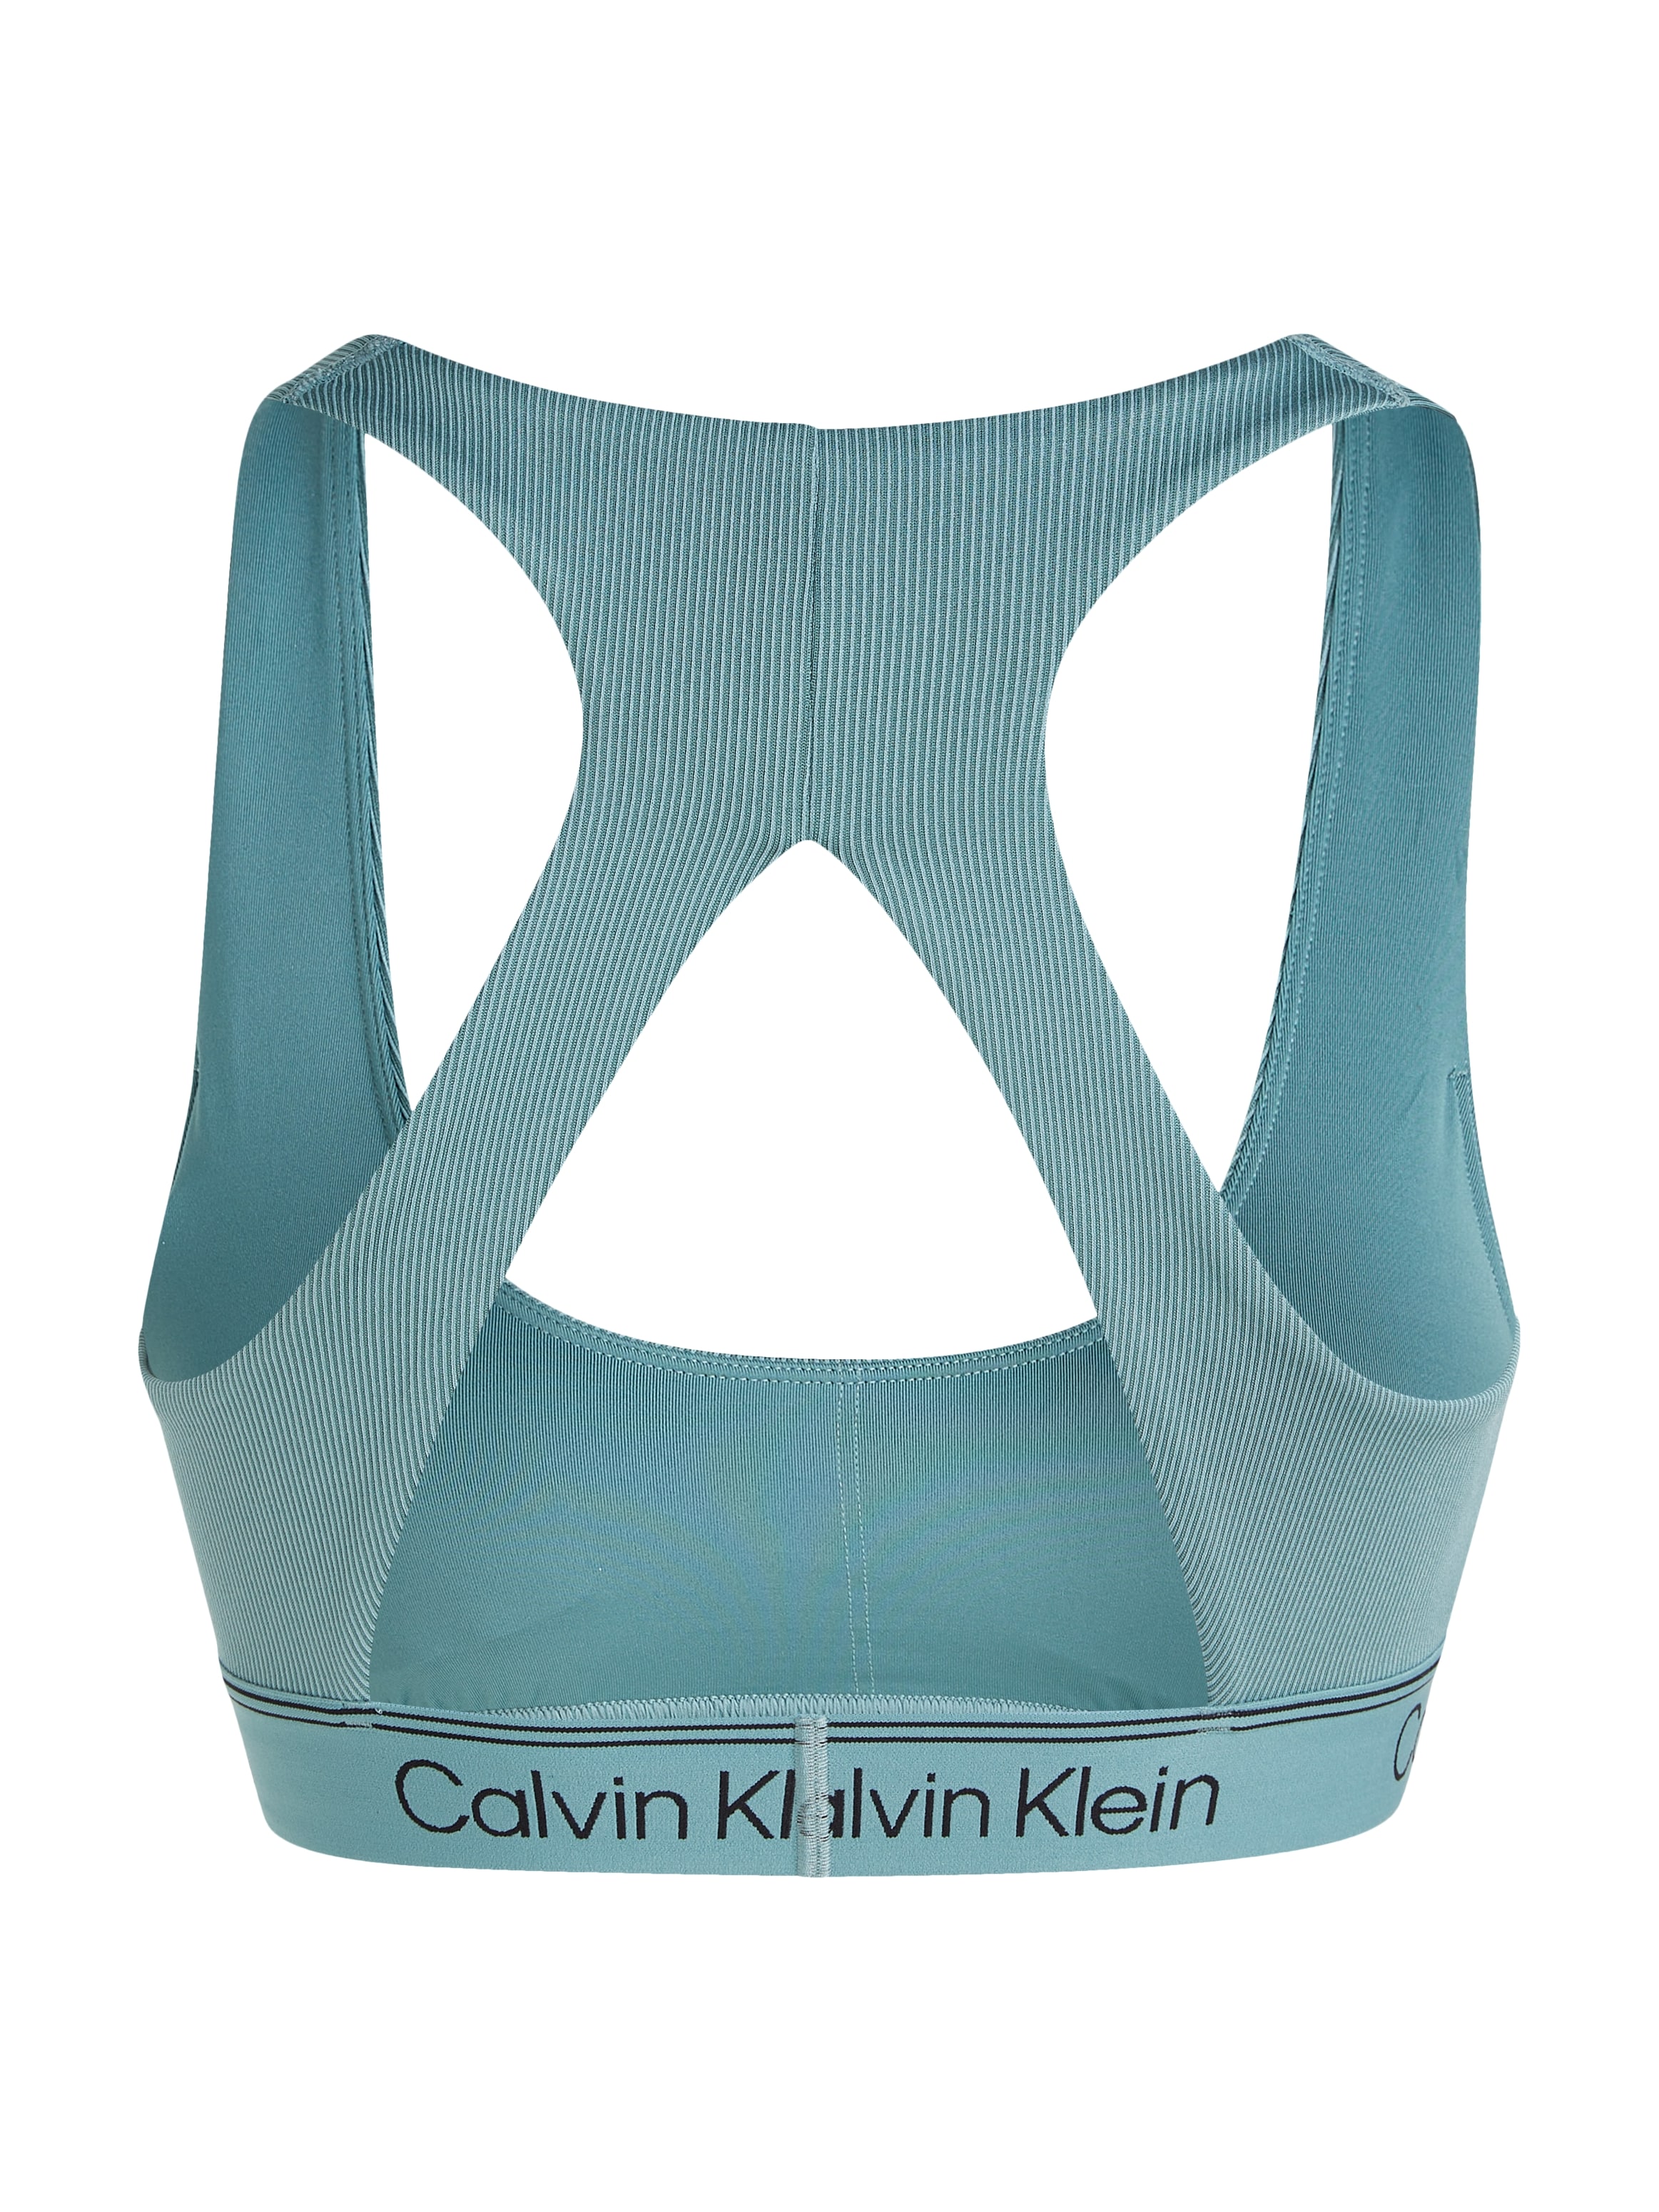 Calvin Klein Sport Sport-Bustier, mit elastischem Bund online kaufen